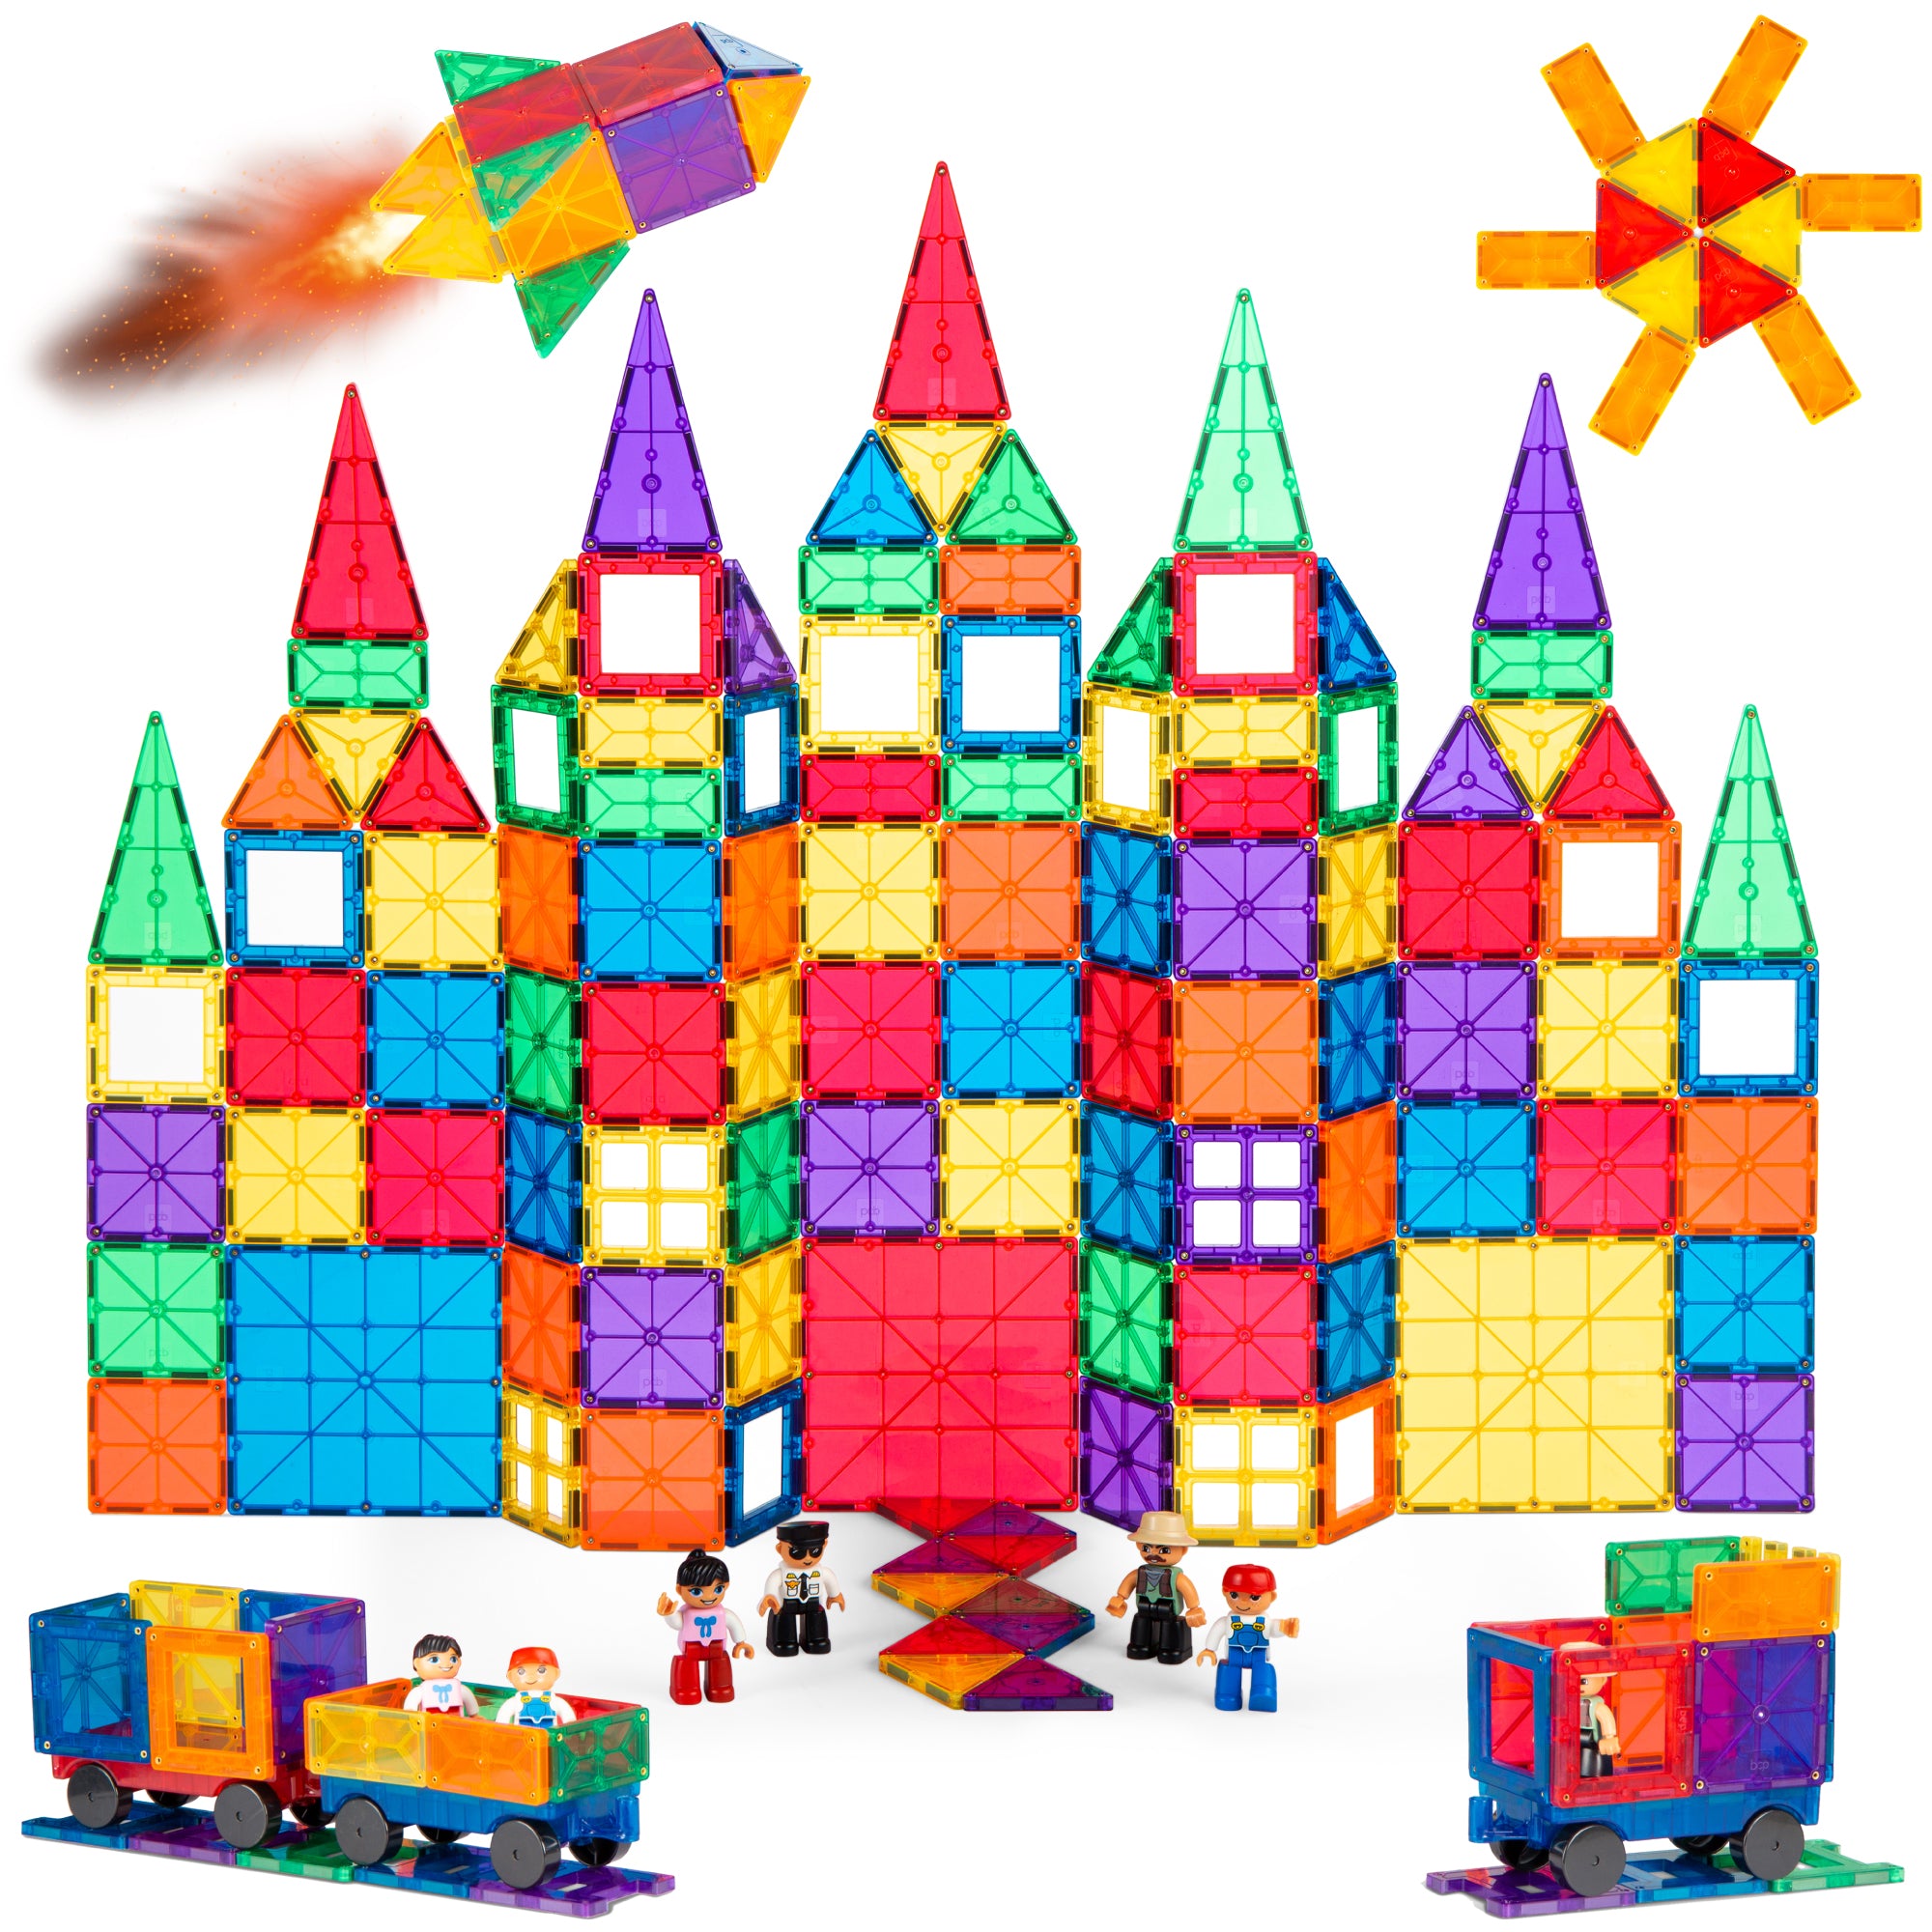 265-Piece Kids Tiles STEM Construction Toy Building Block Set – Best Choice